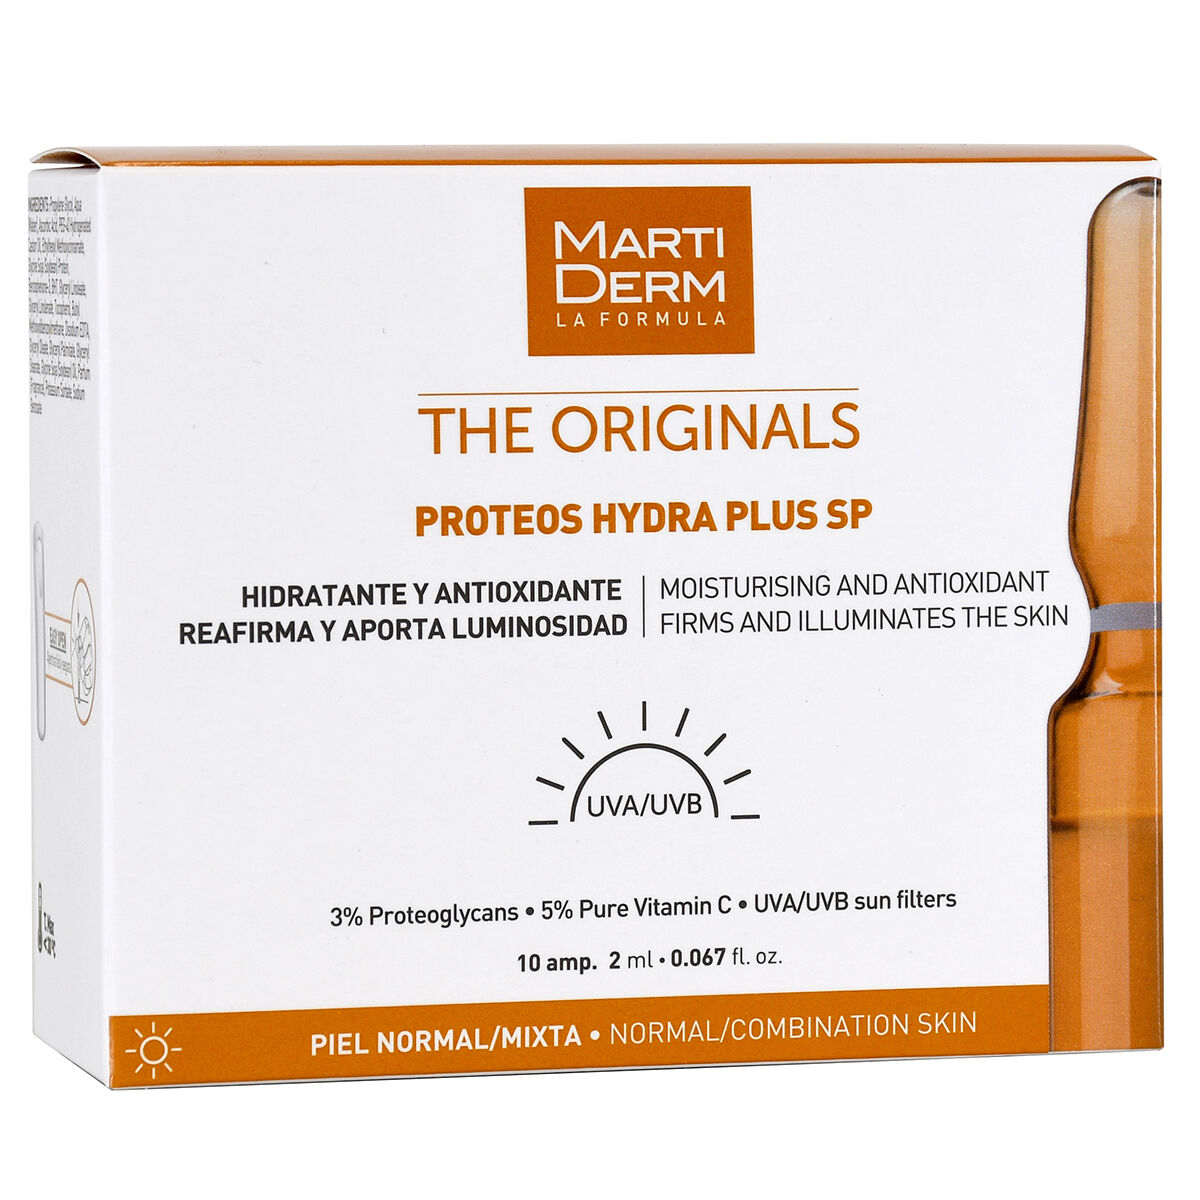 Увлажняющая сыворотка для лица с антиоксидантами в ампулах Martiderm The Originals Proteos Hydra Plus Sp, 10х2 мл